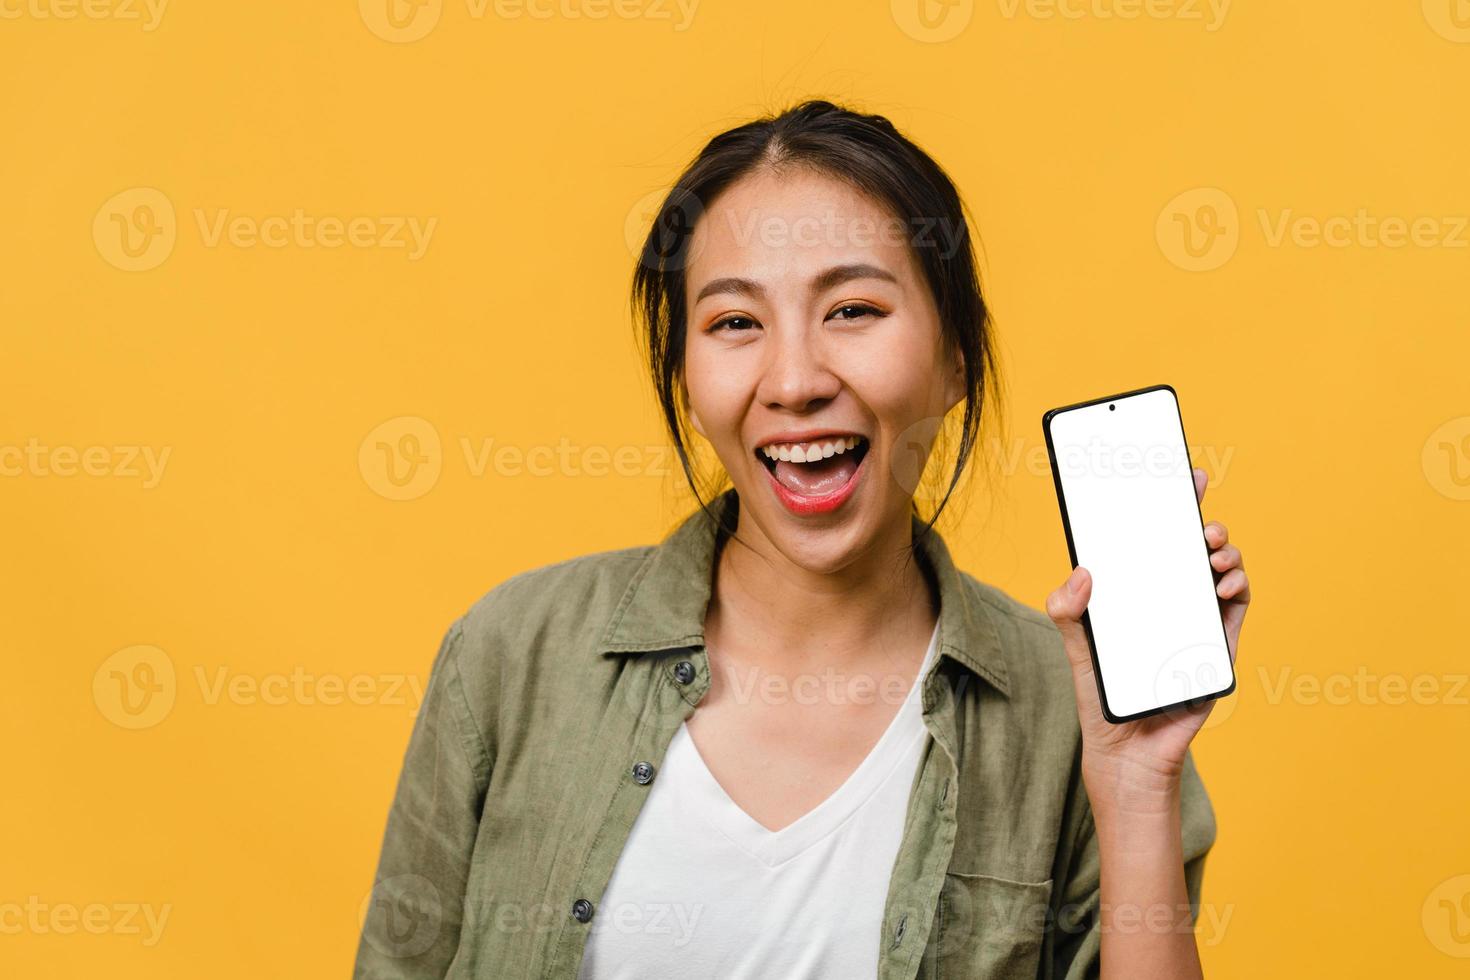 une jeune femme asiatique montre un écran de smartphone vide avec une expression positive, sourit largement, vêtue de vêtements décontractés, se sentant heureuse sur fond jaune. téléphone portable avec écran blanc en main féminine. photo